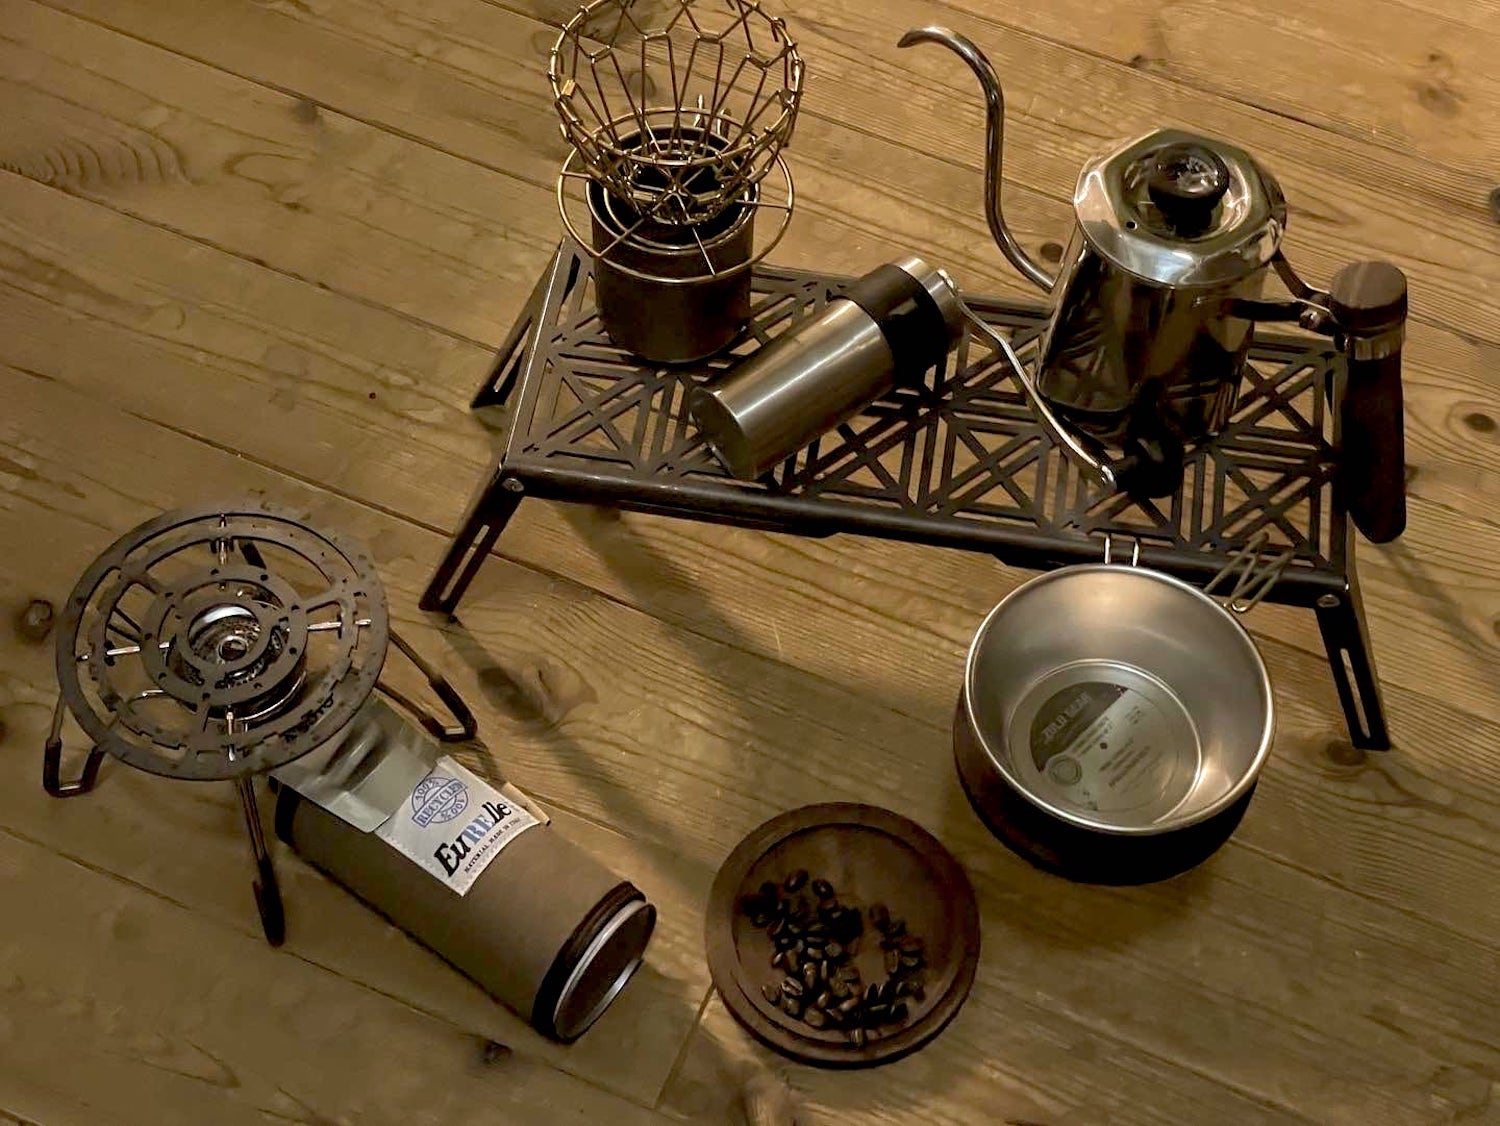 「ZULUGEAR（ズールーギア）」のワンバーナー、五徳、シェラカップ、コーヒー器具